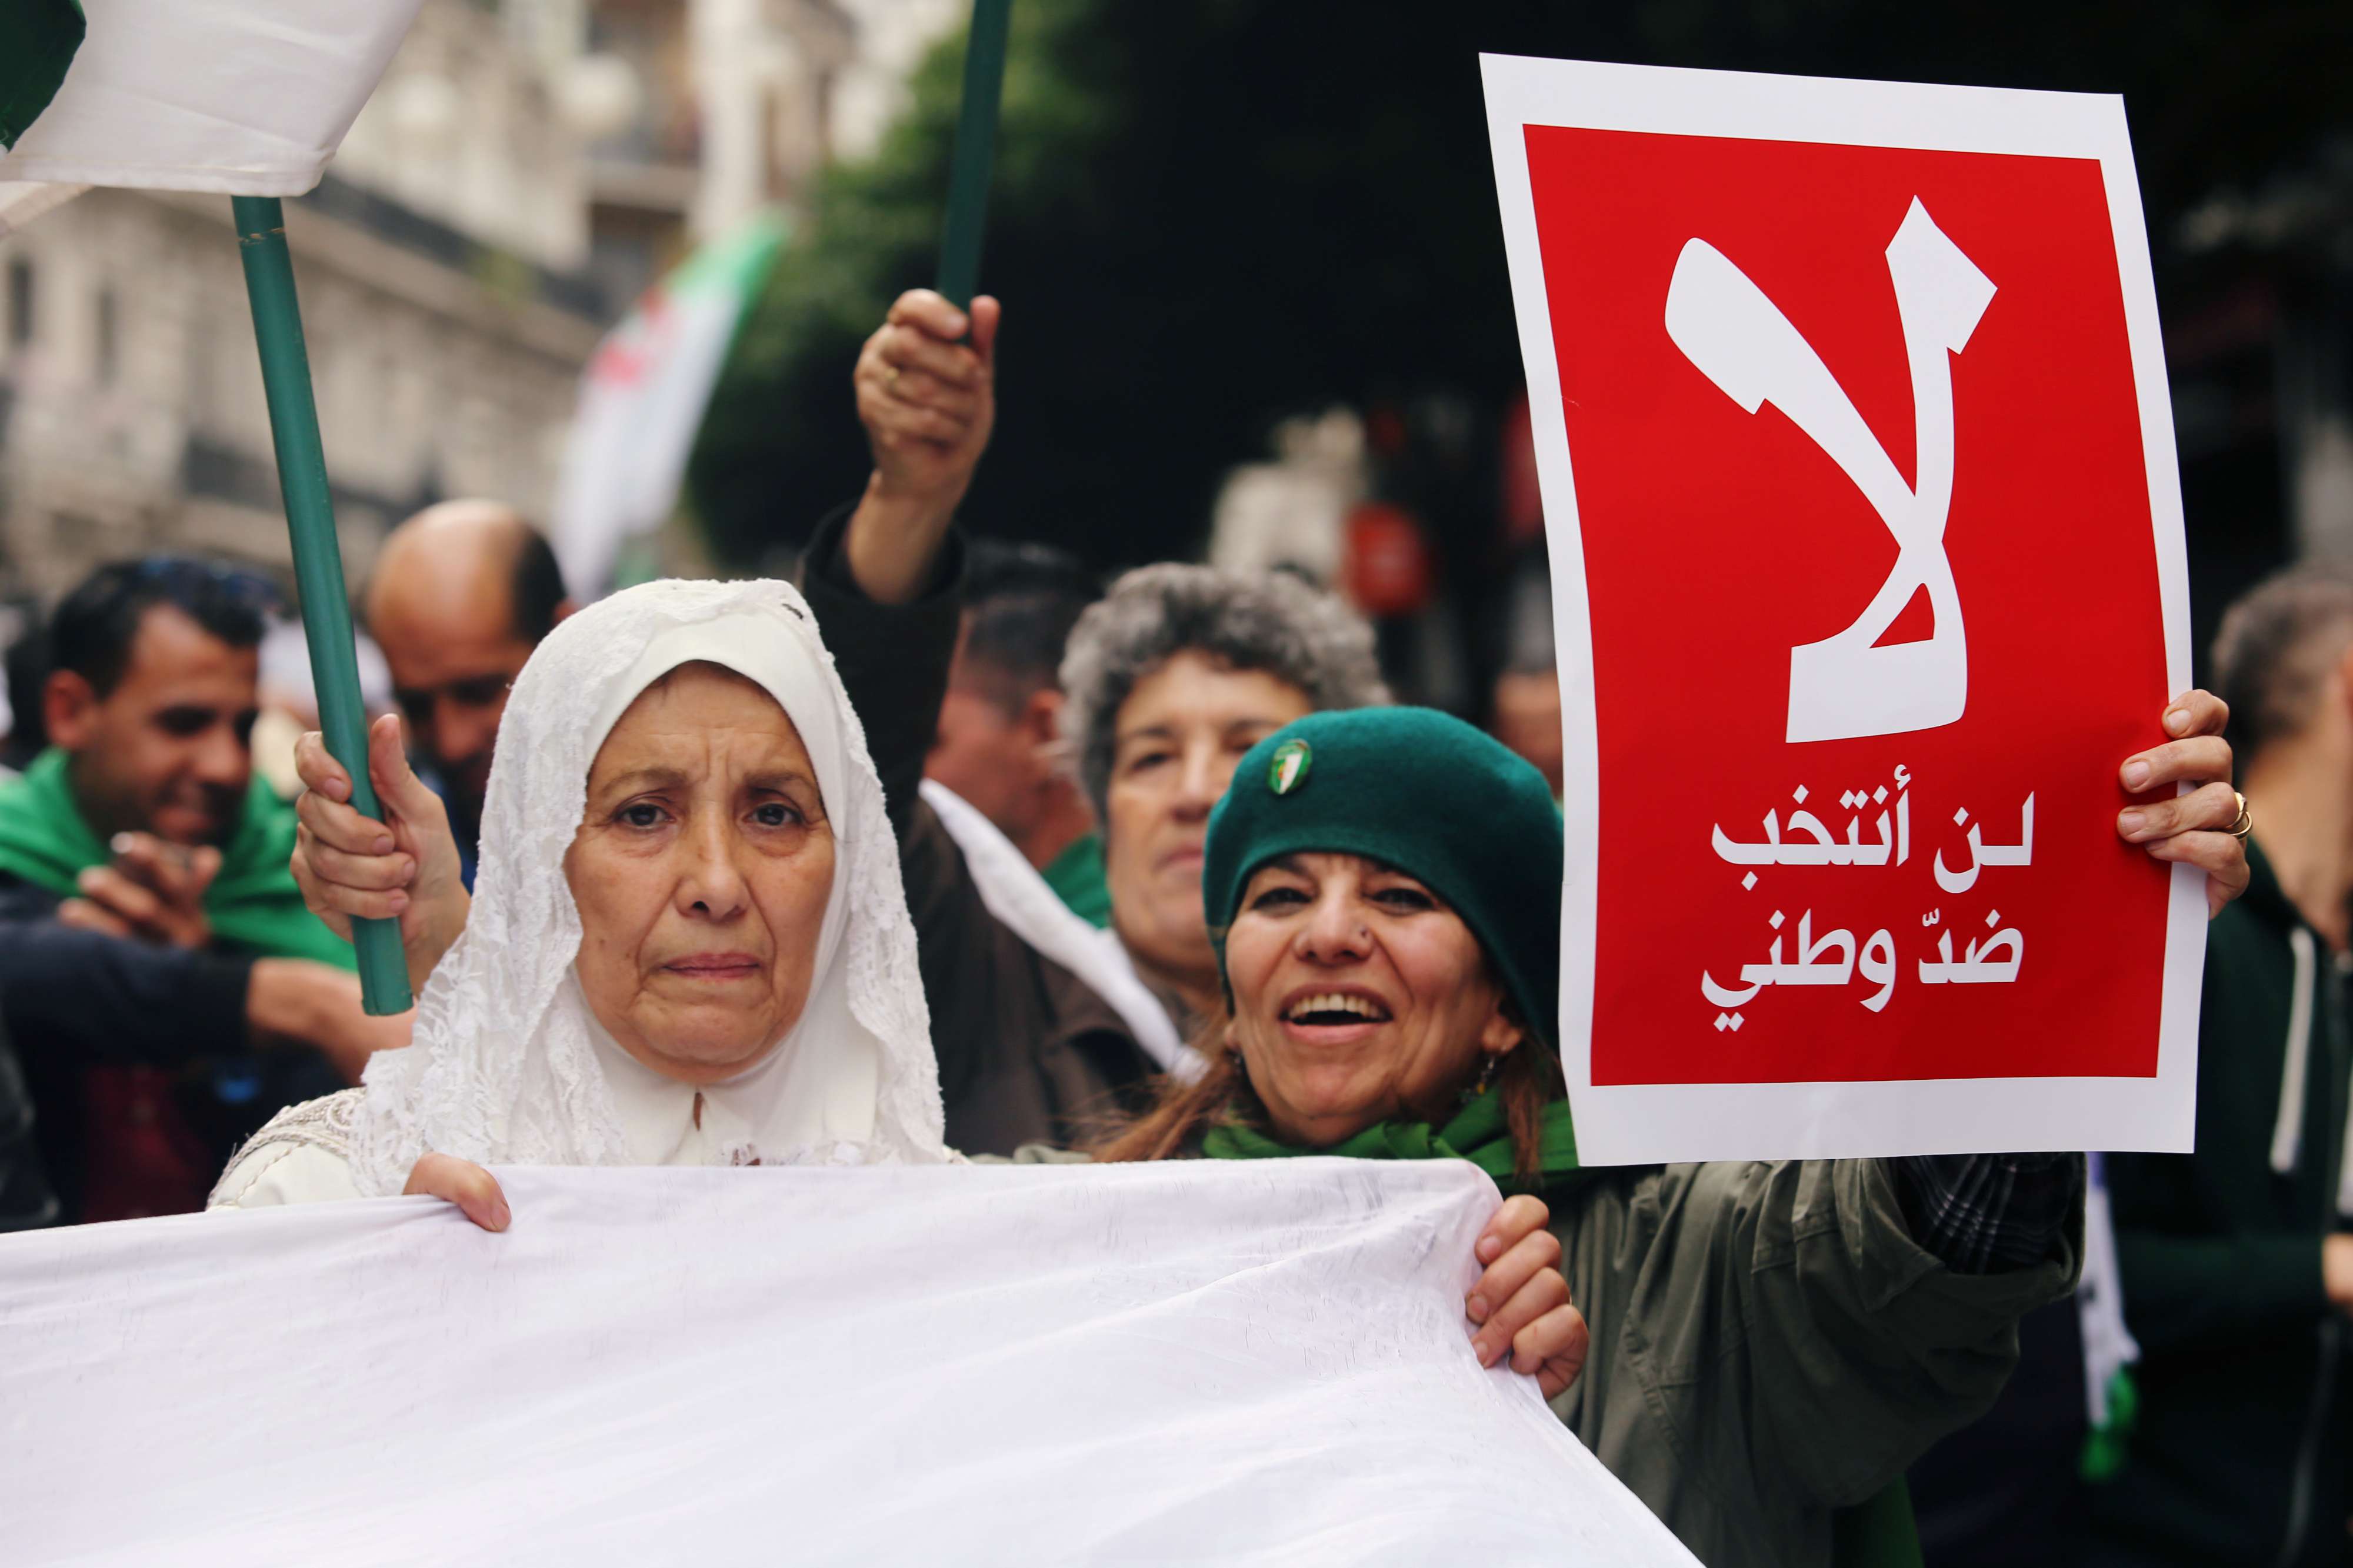 الحملة الانتخابية في الجزائر مستمرة أمام رفض أغلب الجزائريين الذهاب لمراكز الاقتراع